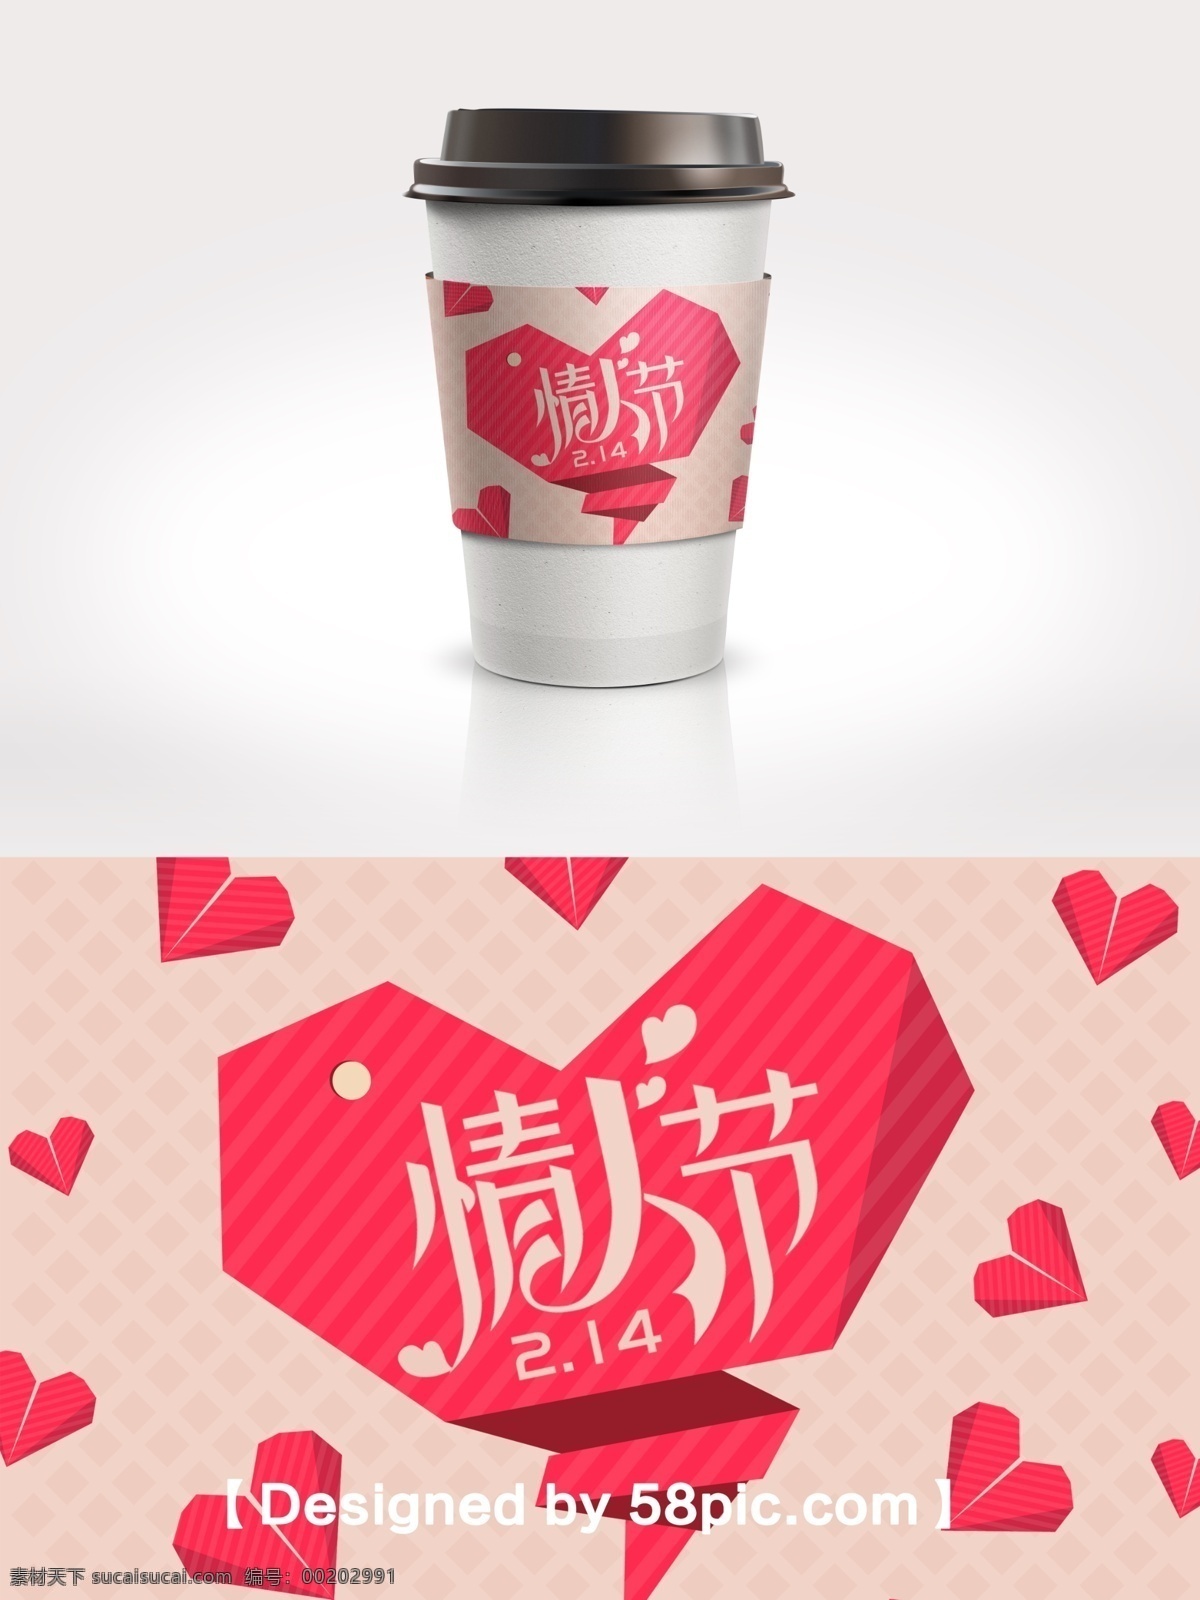 2.14 浪漫 玫 红色 心 型 情人节 节日 包装 咖啡杯 套 psd素材 广告设计模版 节日包装 咖啡套设计 玫红色 情人节素材 心型素材